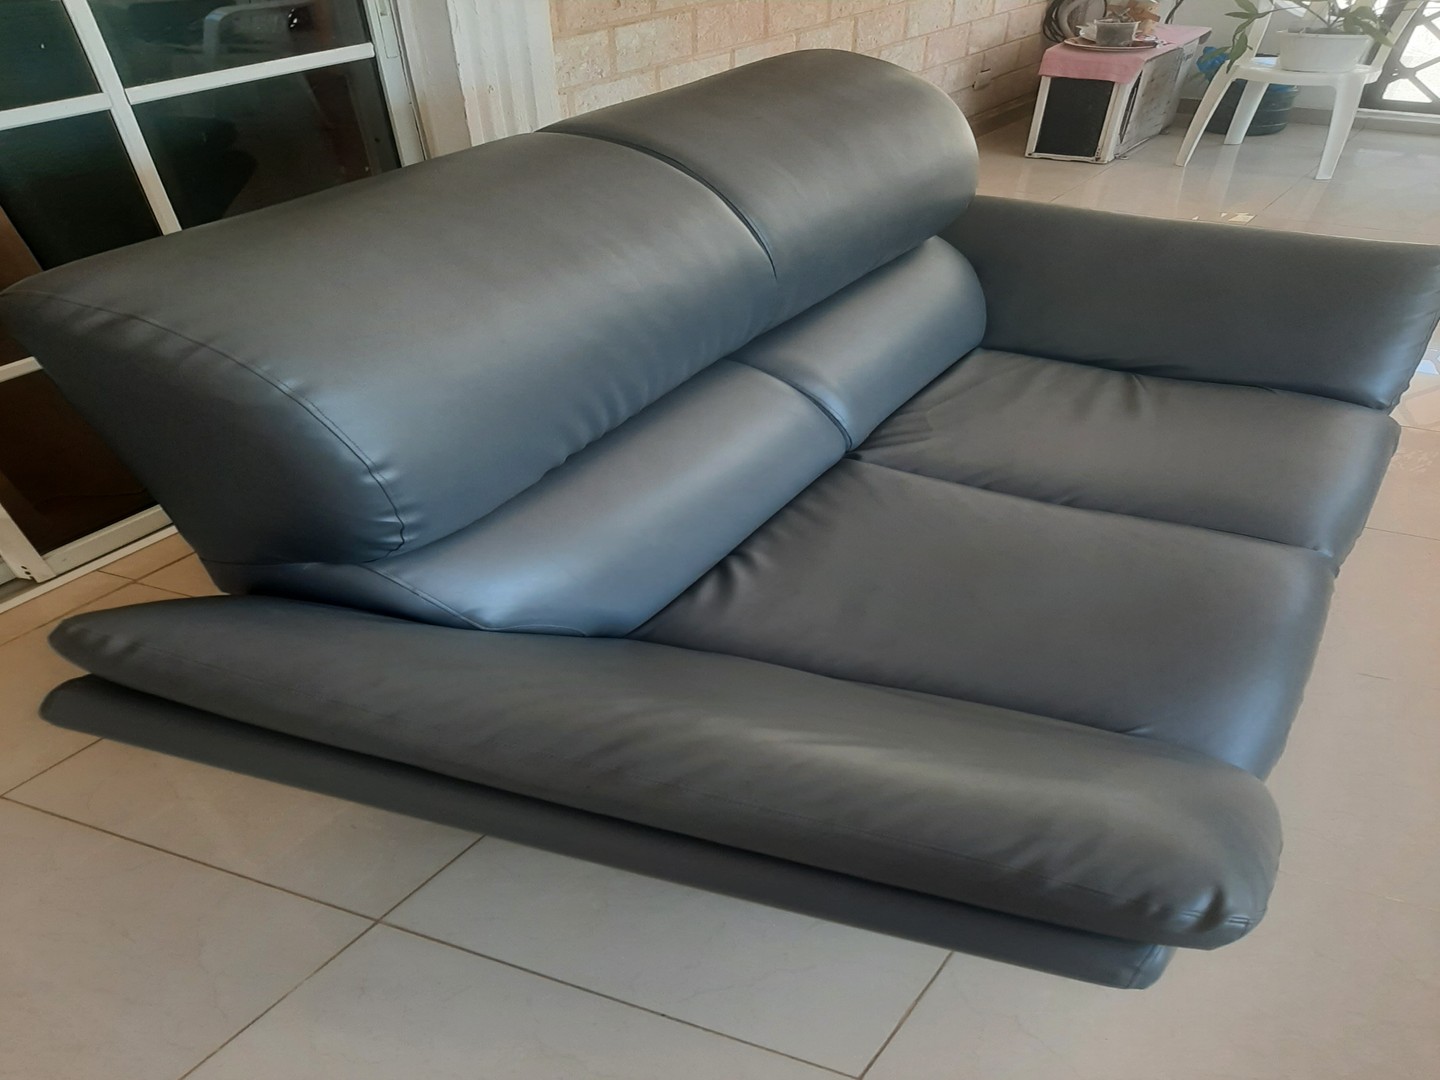 muebles y colchones - Mueble sofá en Vinil Gris, 14,500.00 2